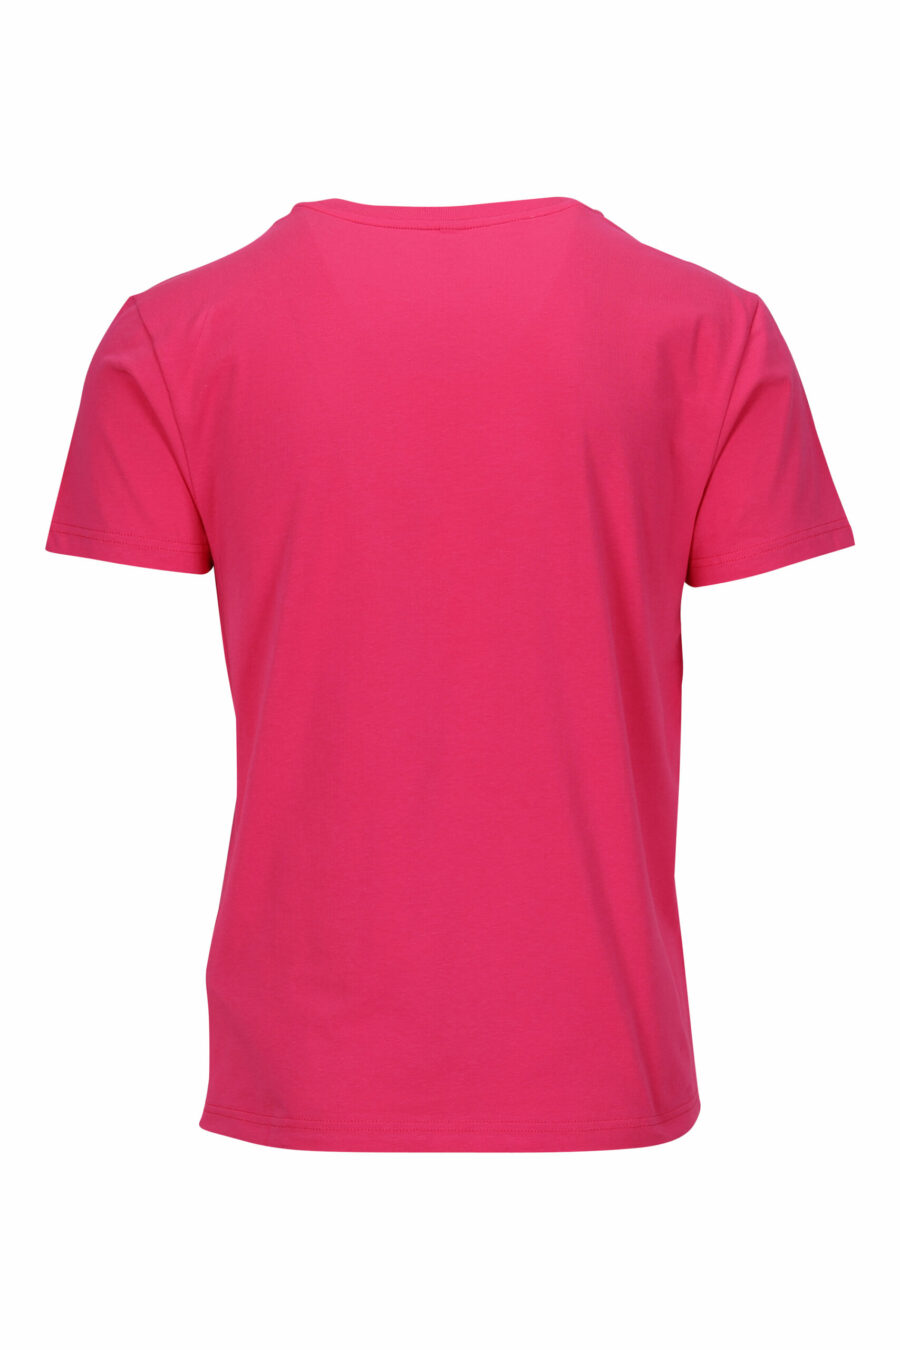 T-shirt fuchsia avec minilogue "swim" - 667113673301 1 à l'échelle